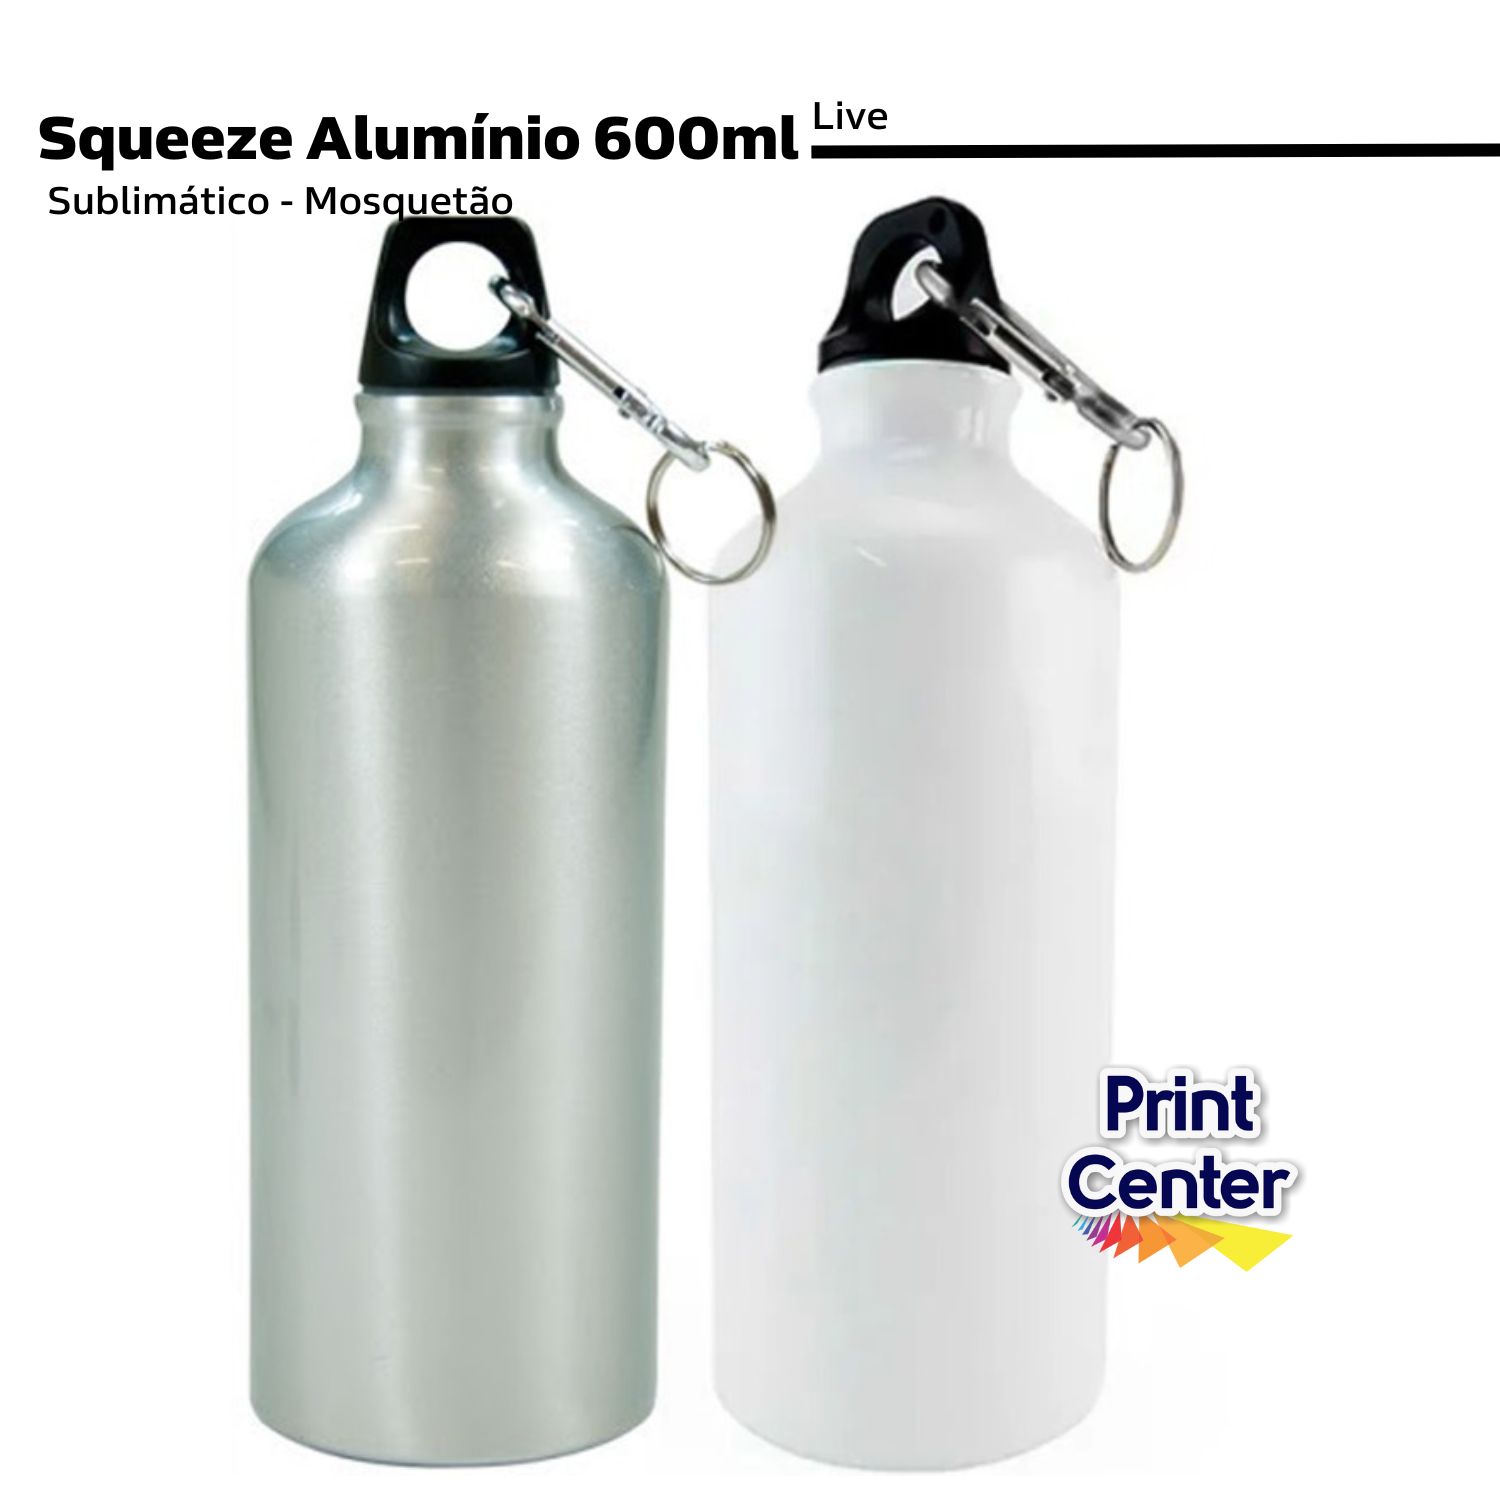 Squeeze Alumínio p/ Sublimação 600ml - Mosquetão